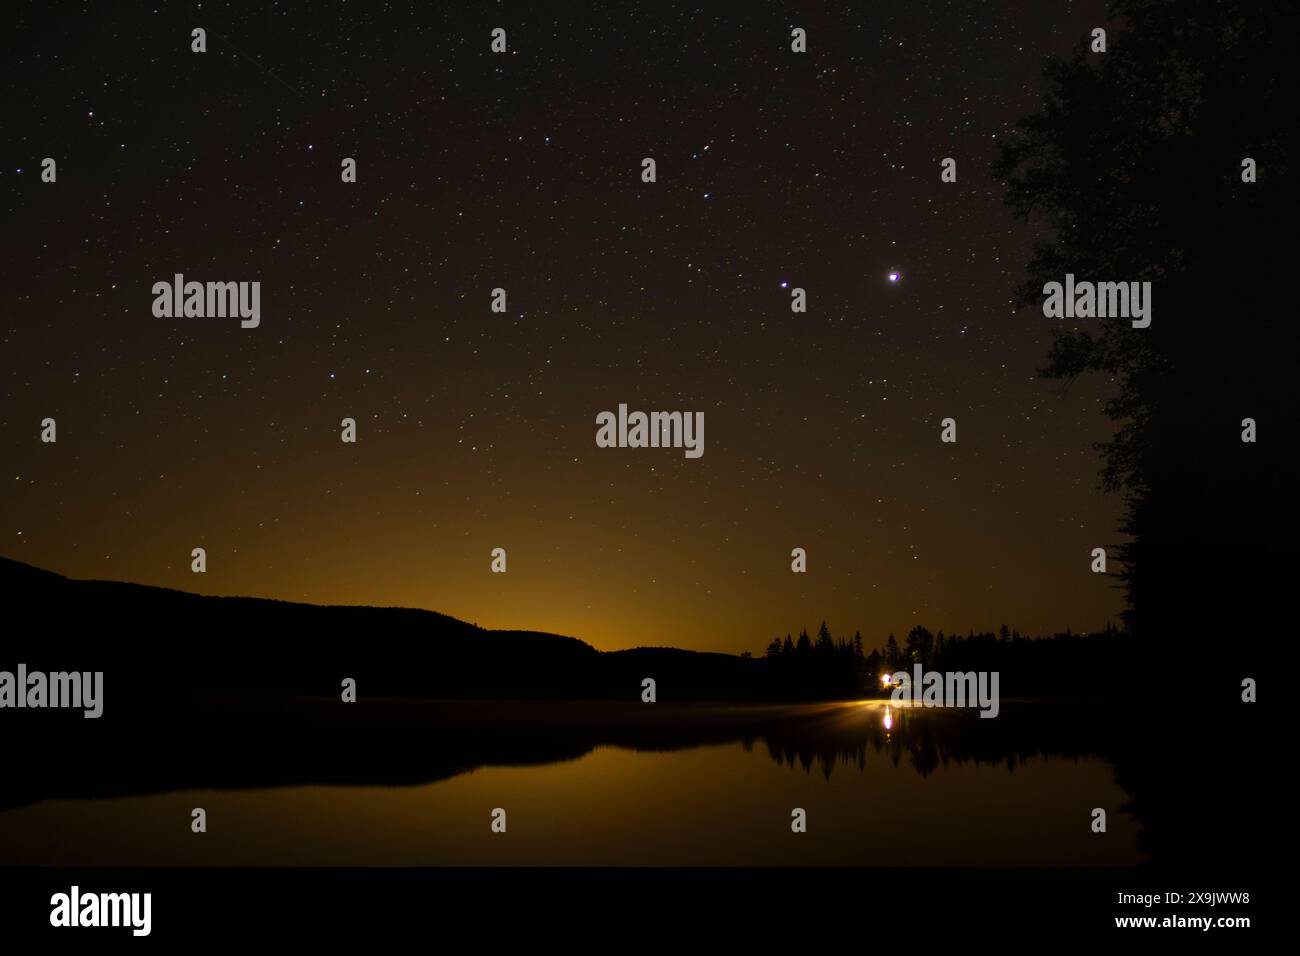 La luce di una cabina solitaria si riflette su un tranquillo lago sotto un cielo stellato nei boschi del nord del Quebec, Canada. Foto Stock